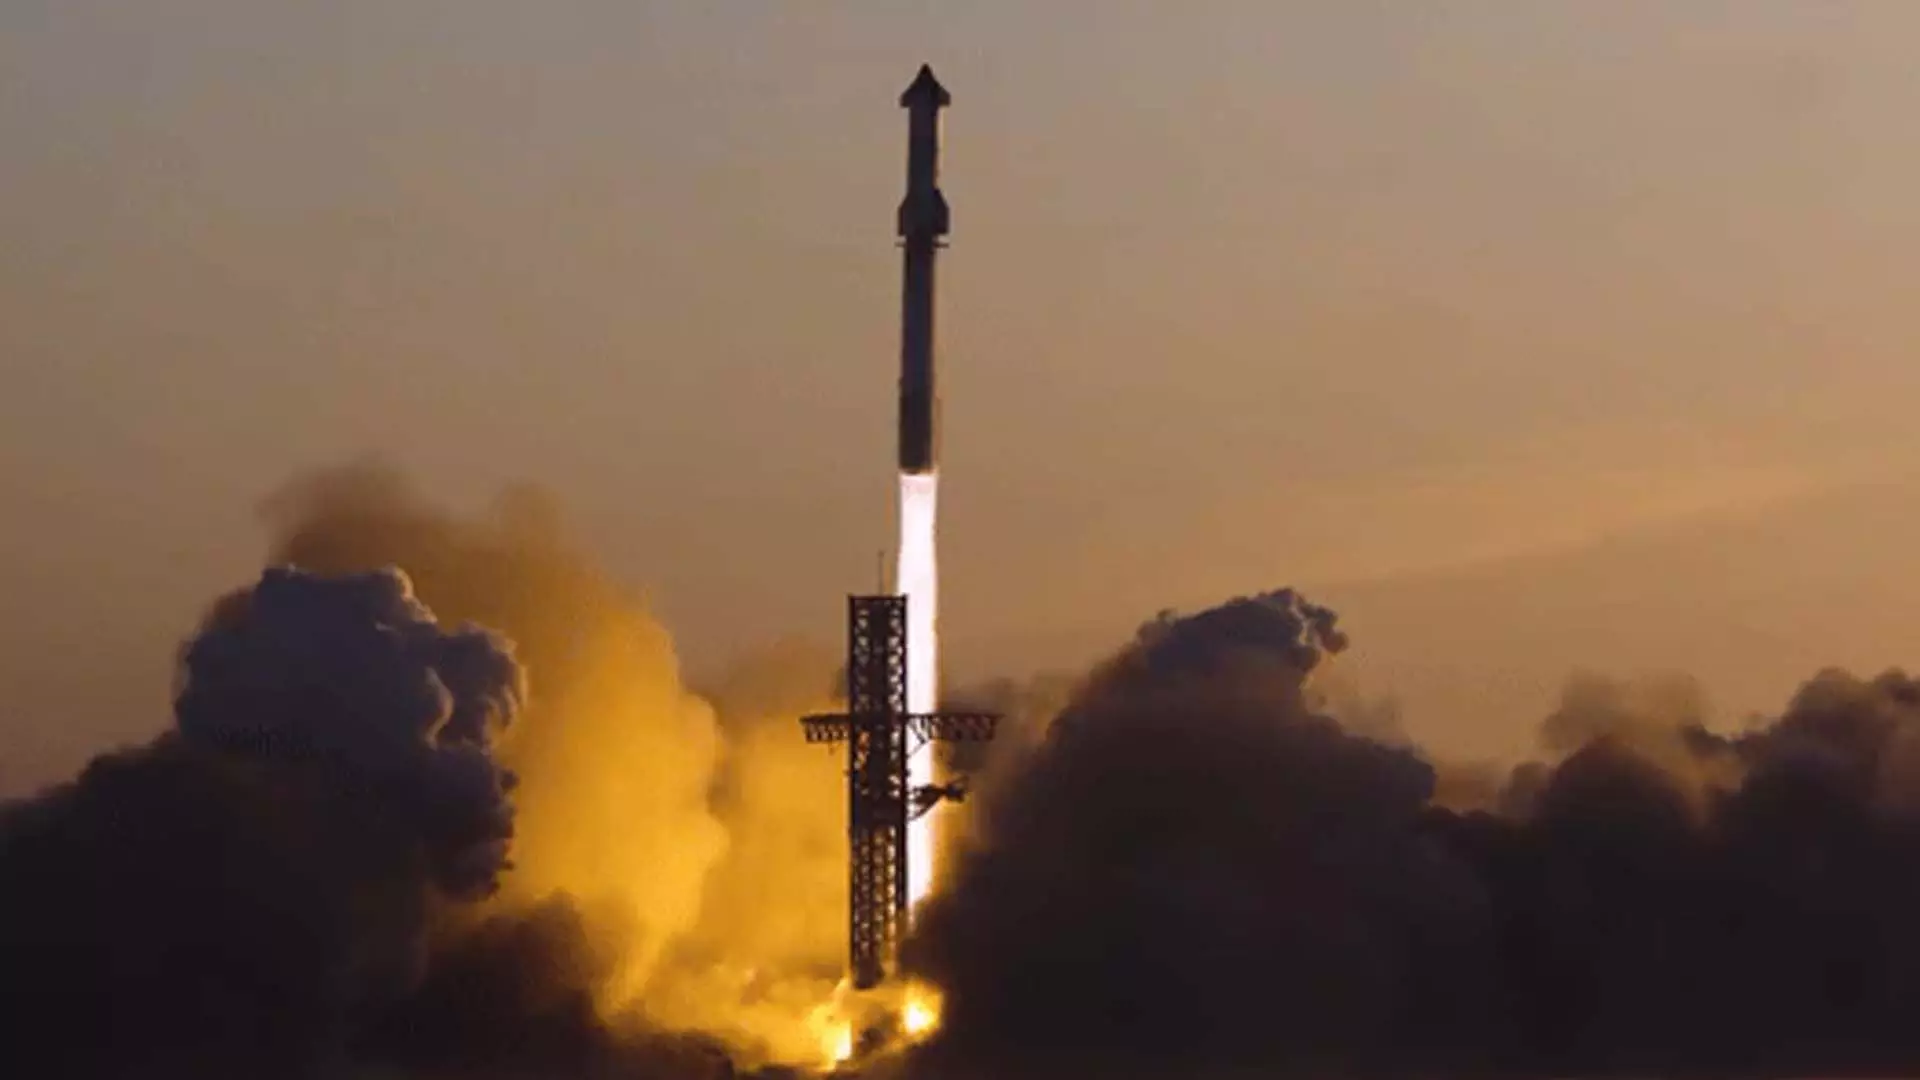 स्पेसएक्स ऑस्ट्रेलियाई तट पर स्टारशिप रॉकेट उतारने और उसे वापस लाने की योजना बना रहा